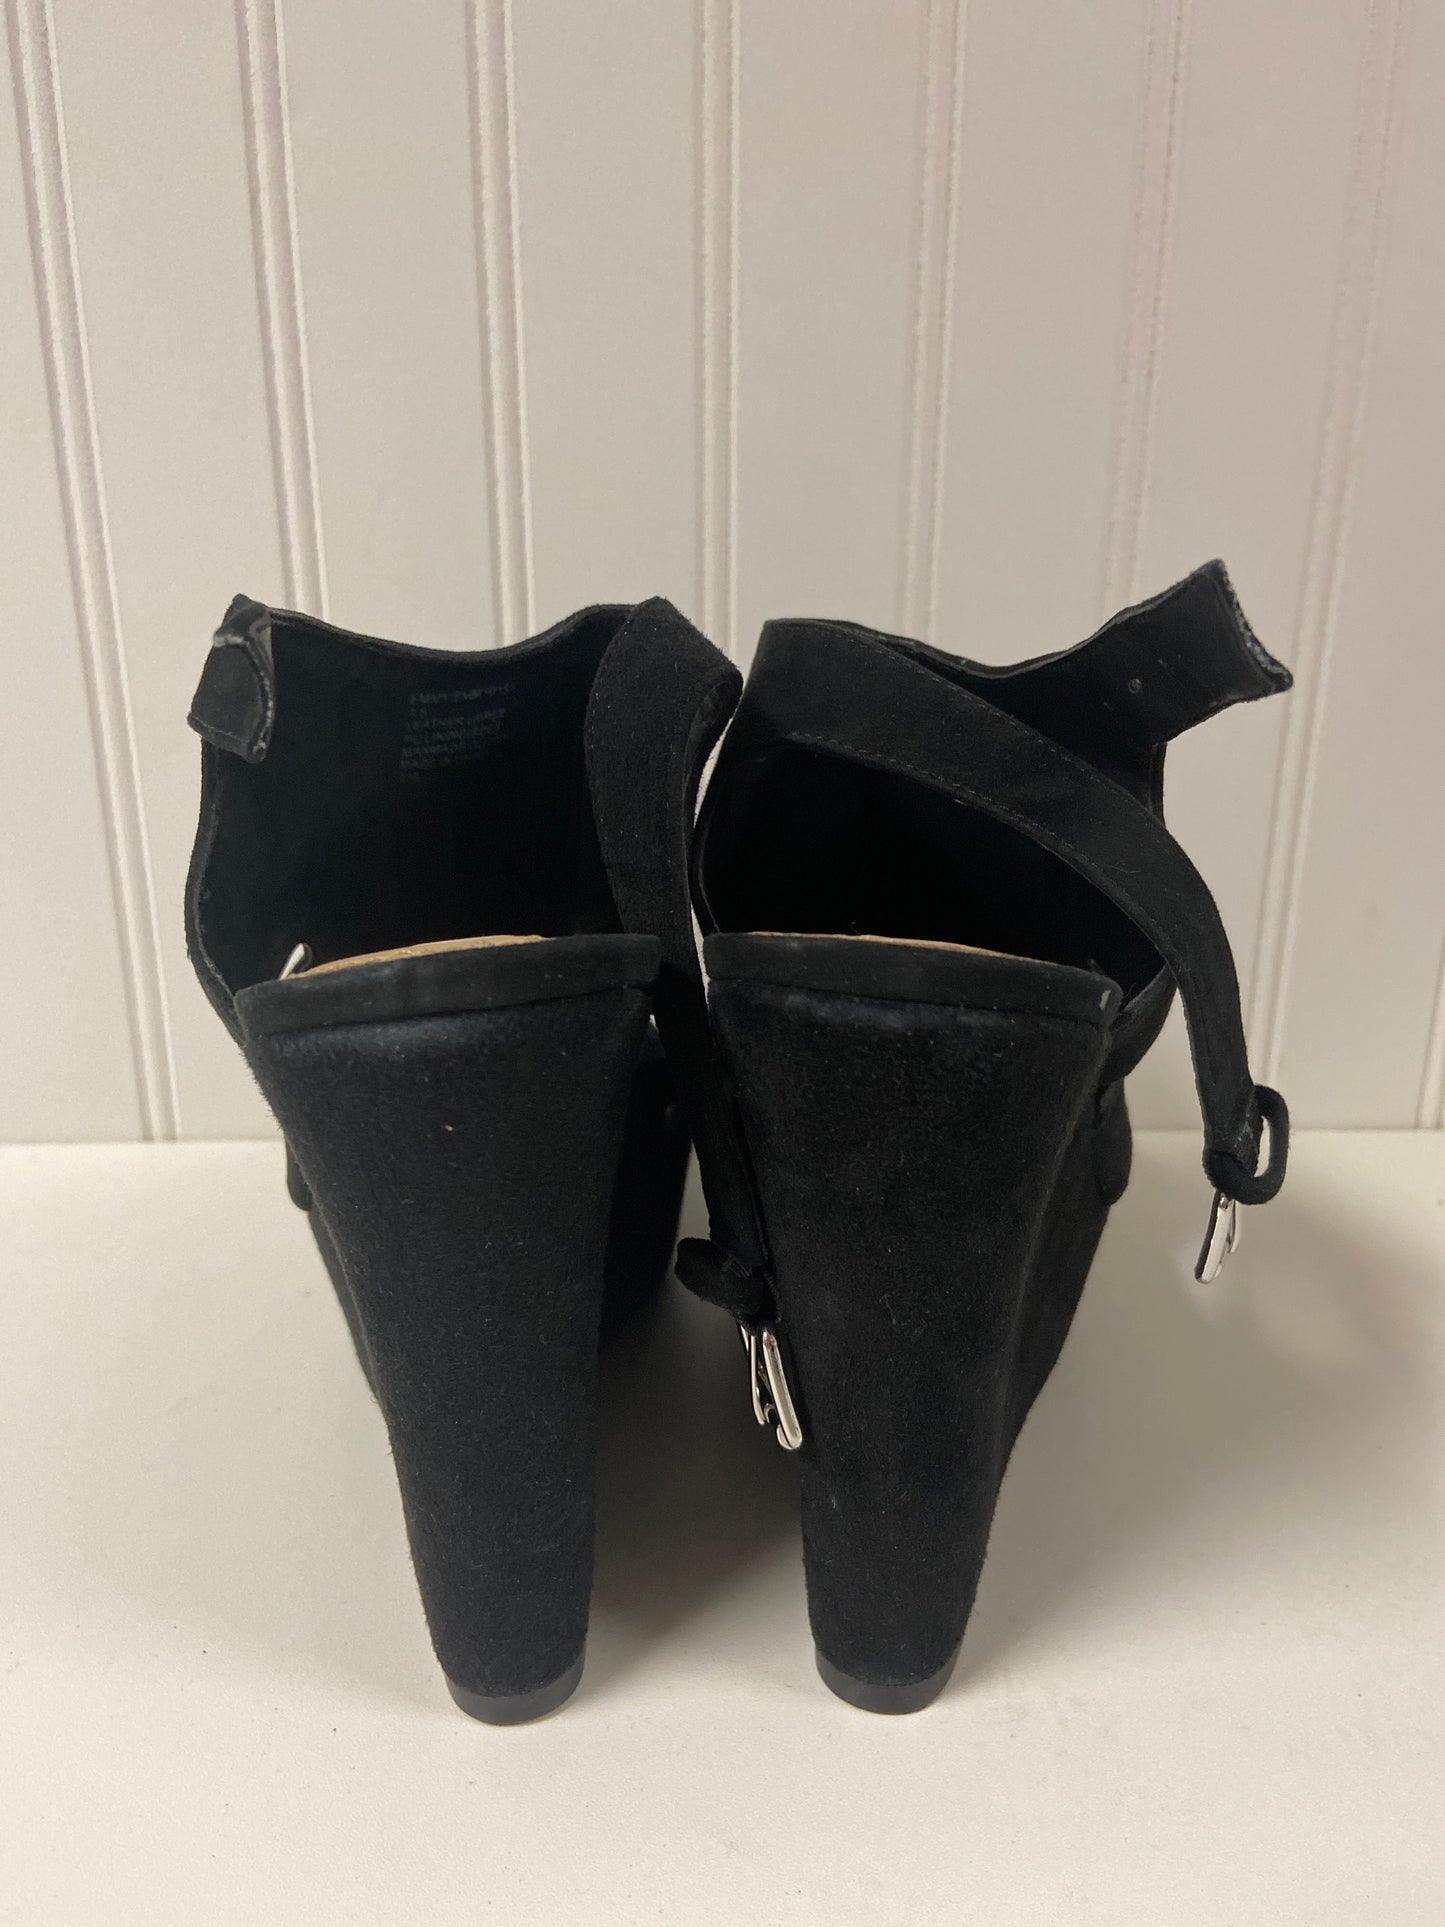 Black Shoes Heels Wedge Steve Madden, Size 7.5